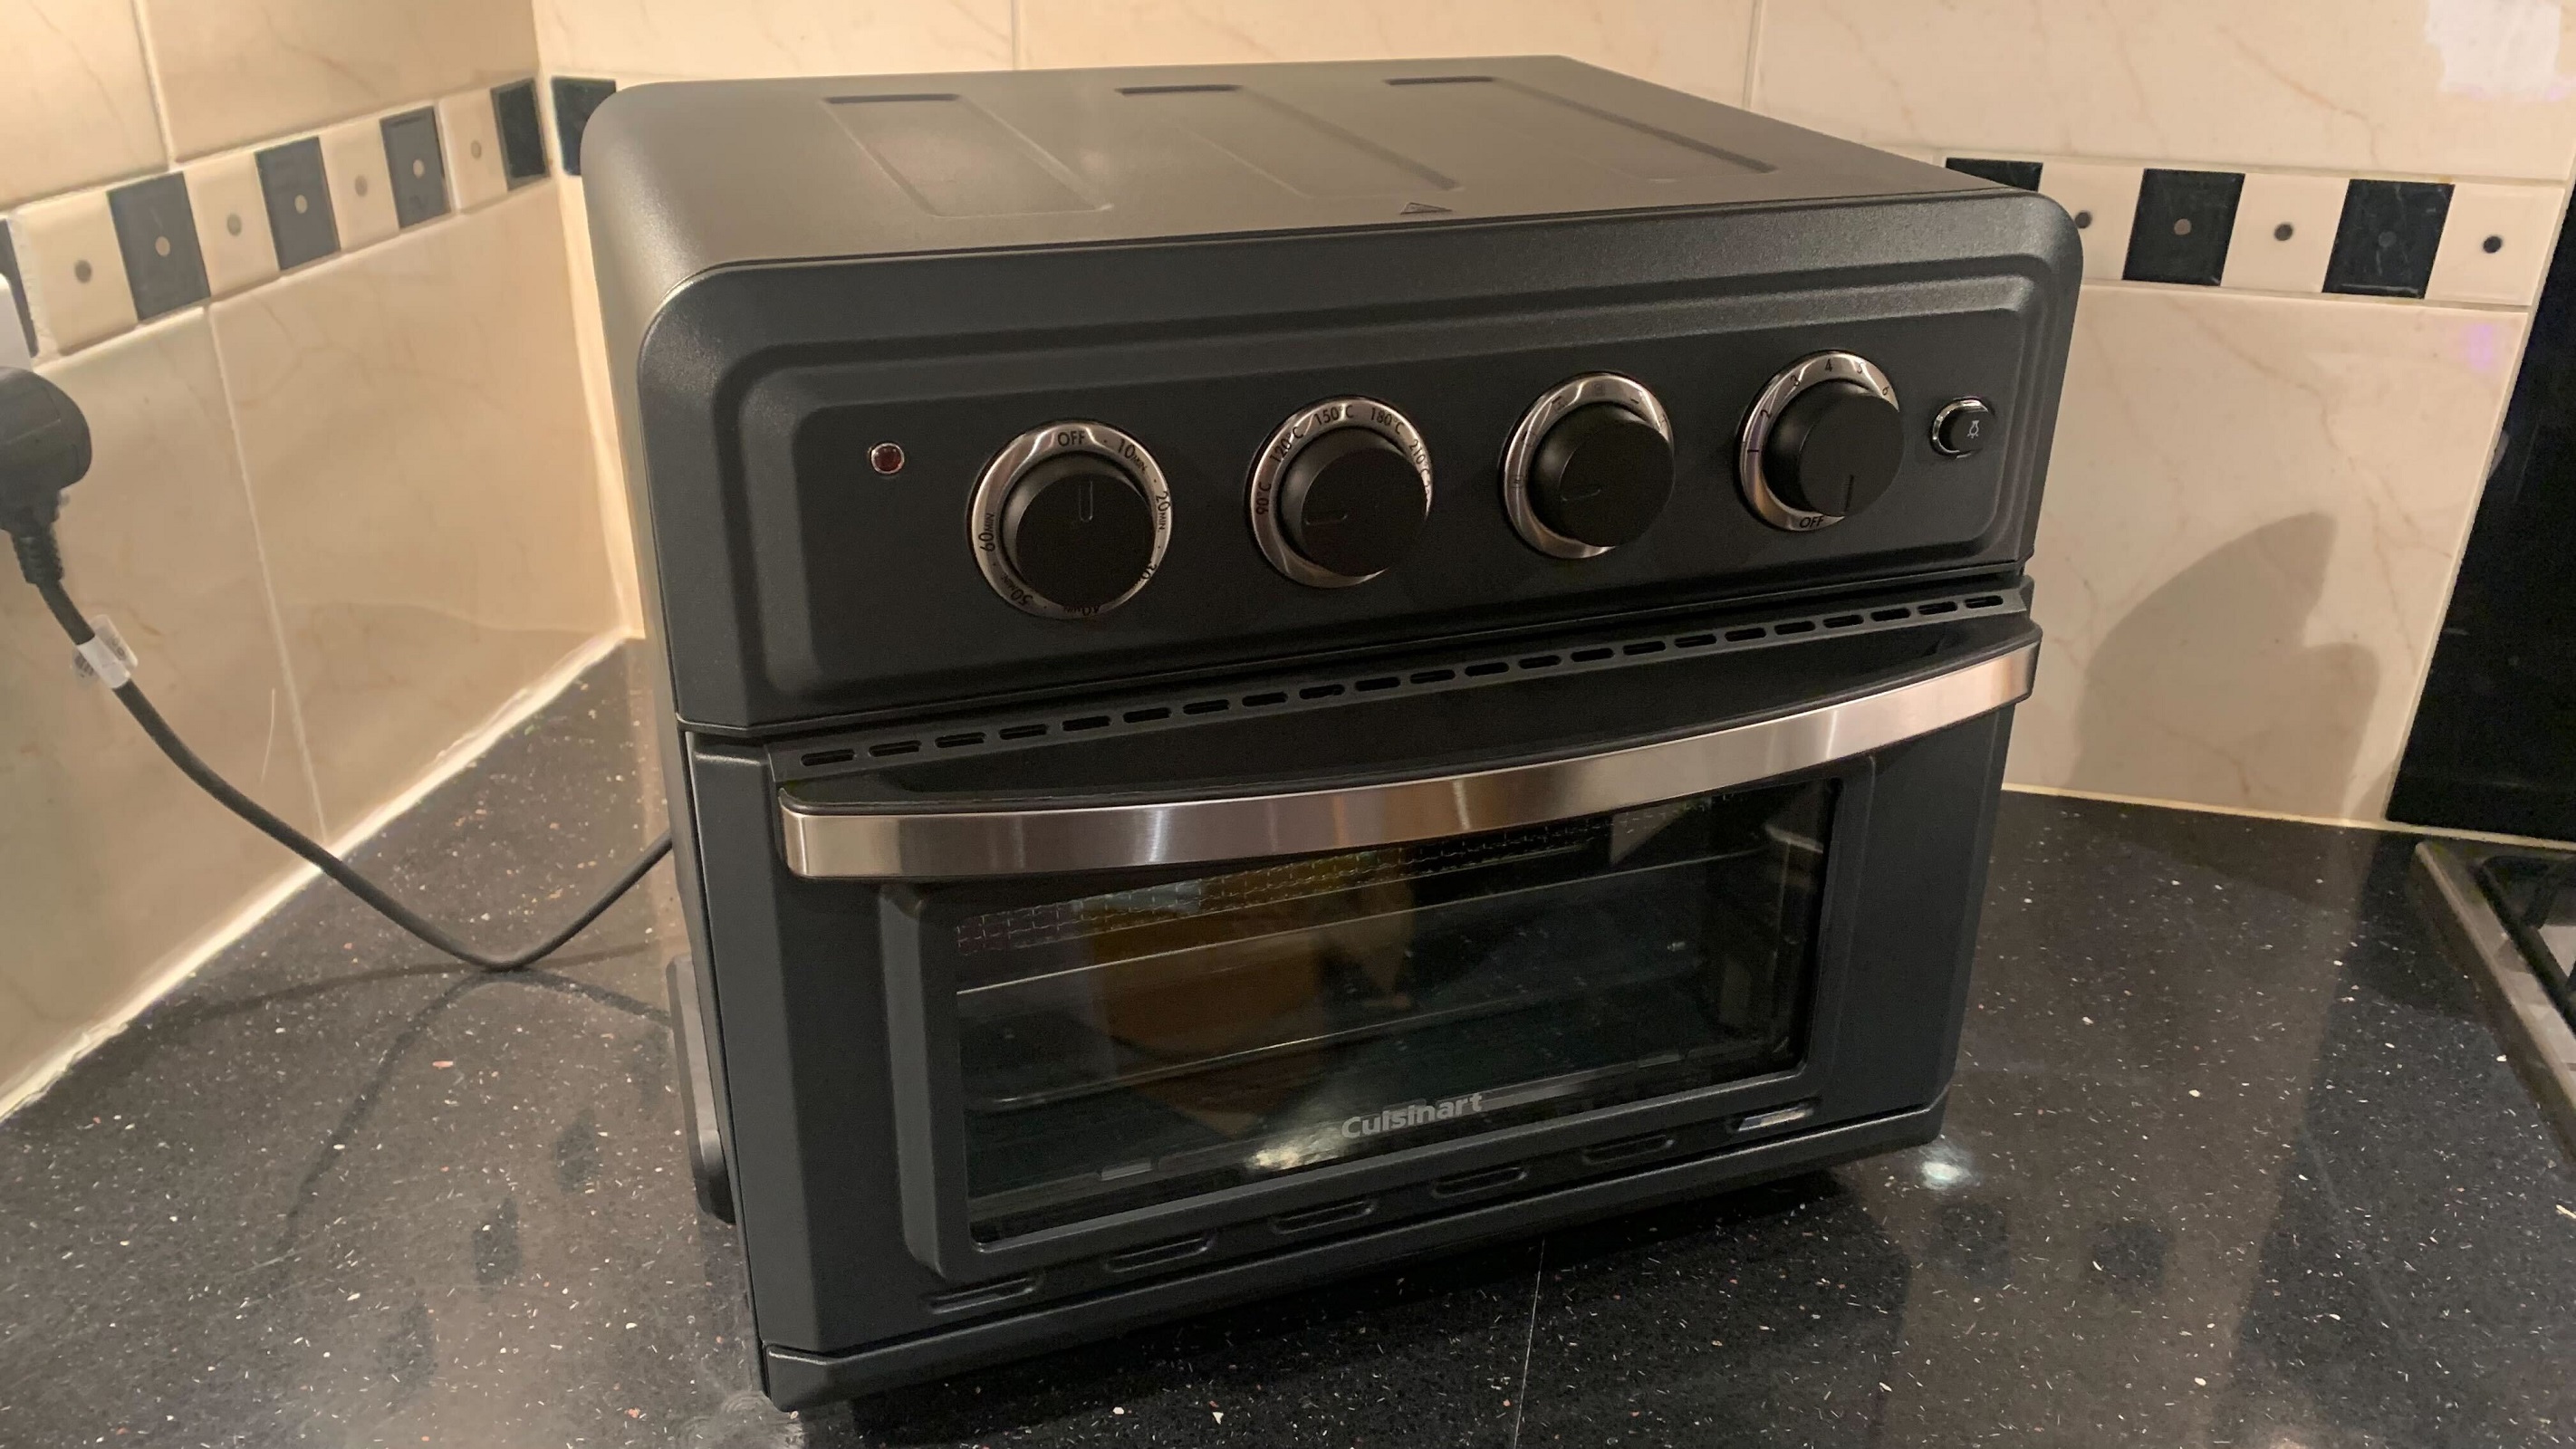 En Cuisinart Air Fryer Mini Oven står på et køkkenbord.